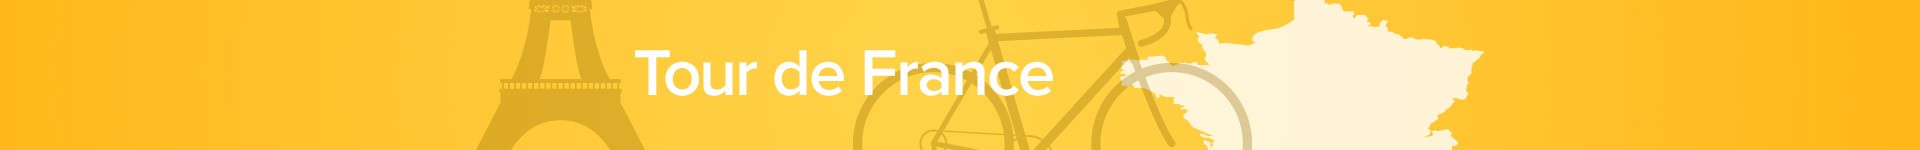 Tour de France collectie: het gaat niet alleen om de fiets!